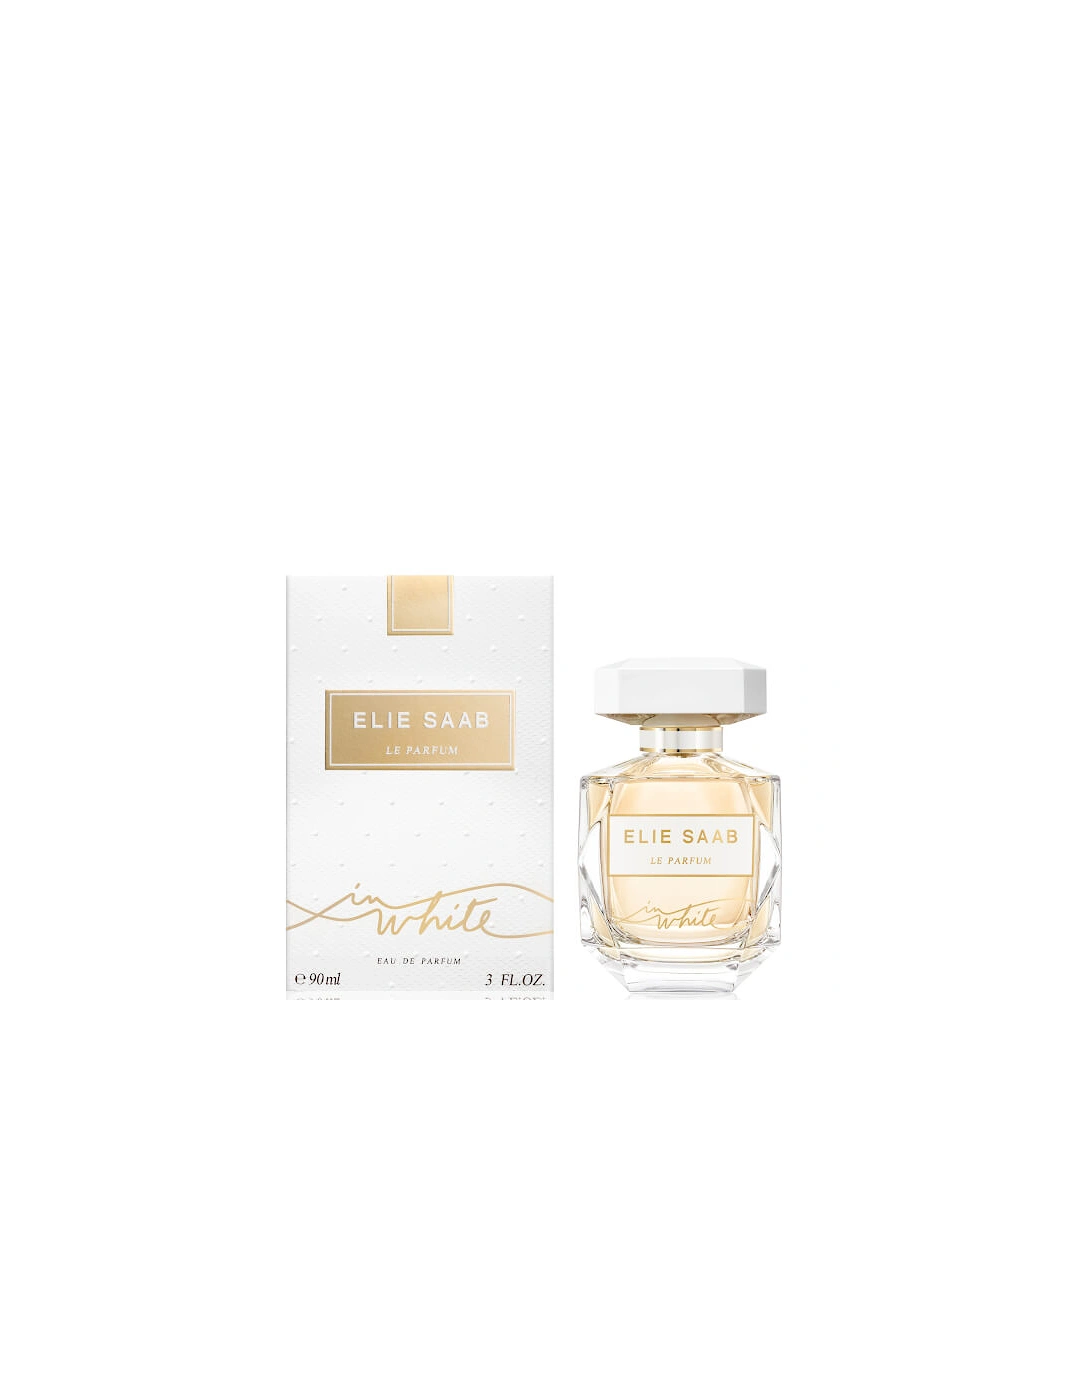 Le Parfum in White Eau de Parfum - 90ml, 2 of 1